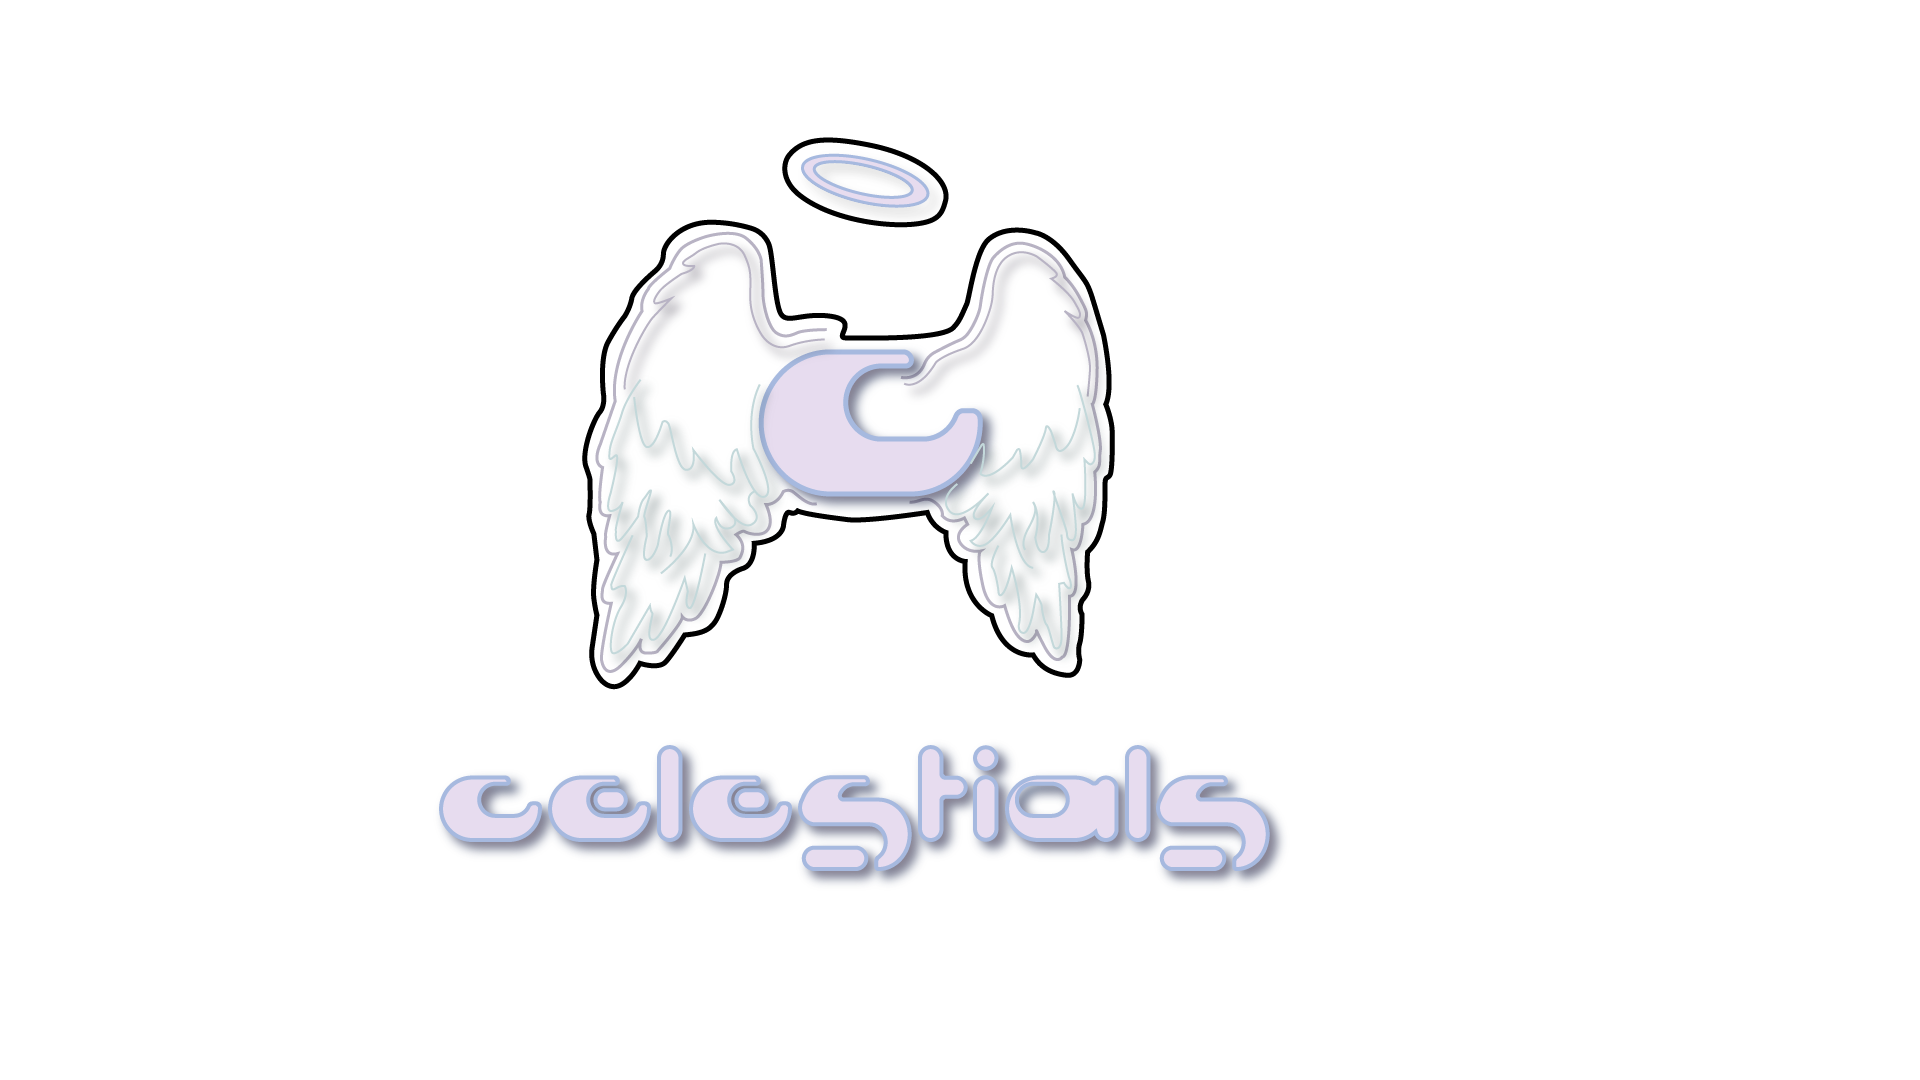 Celestials Original